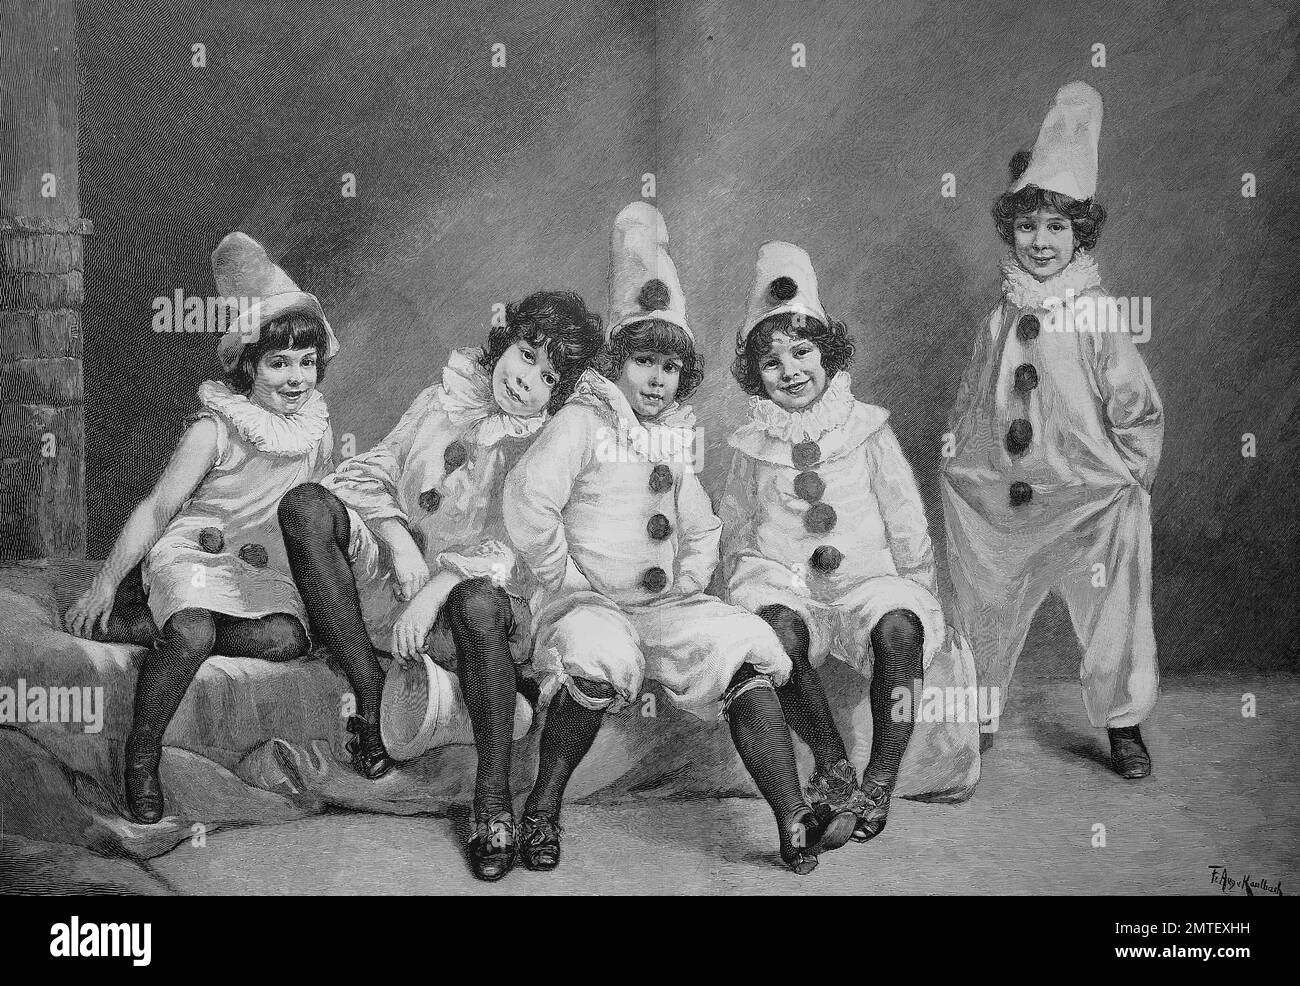 Kinder Karneval, Kindercarneval, von Friedrich August von Kaulbach, ein deutscher Porträtmaler und Historienmaler, Illustration in 1880 veröffentlicht Stockfoto